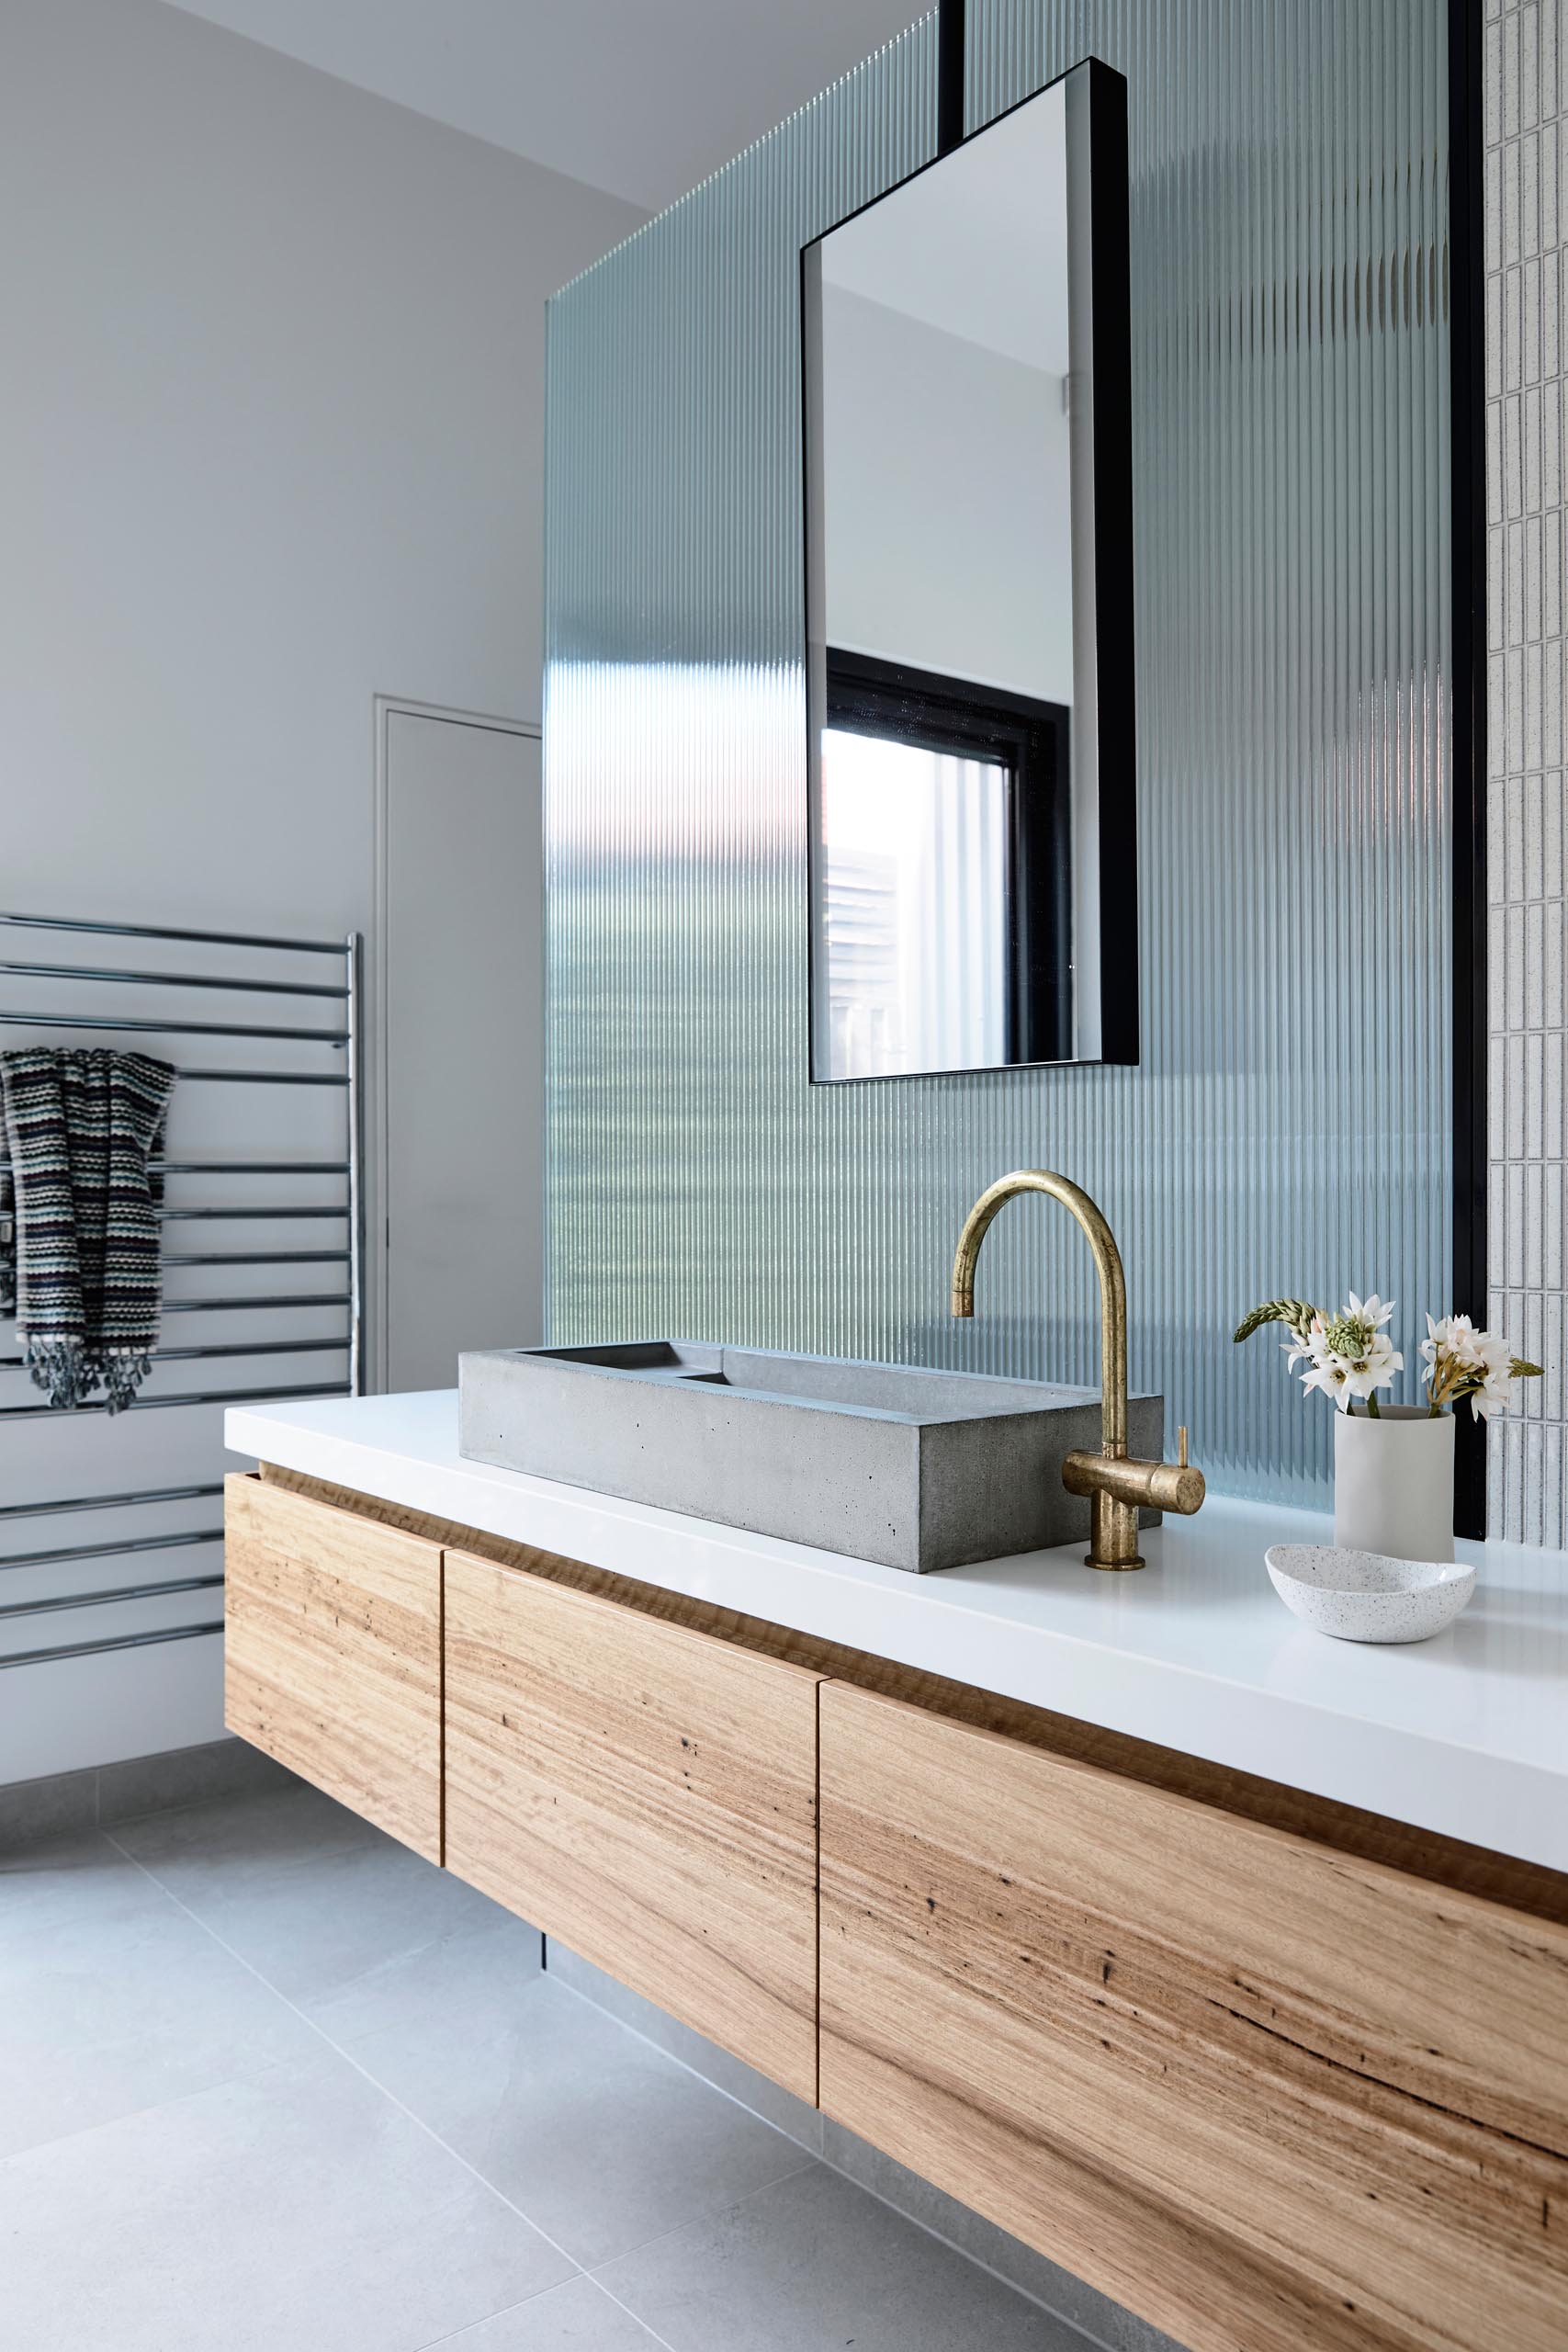 Современная ванная комната с длинным деревянным туалетным столиком, бетонной раковиной, бронзовым смесителем и текстурированной стеклянной панелью, скрывающей душ.